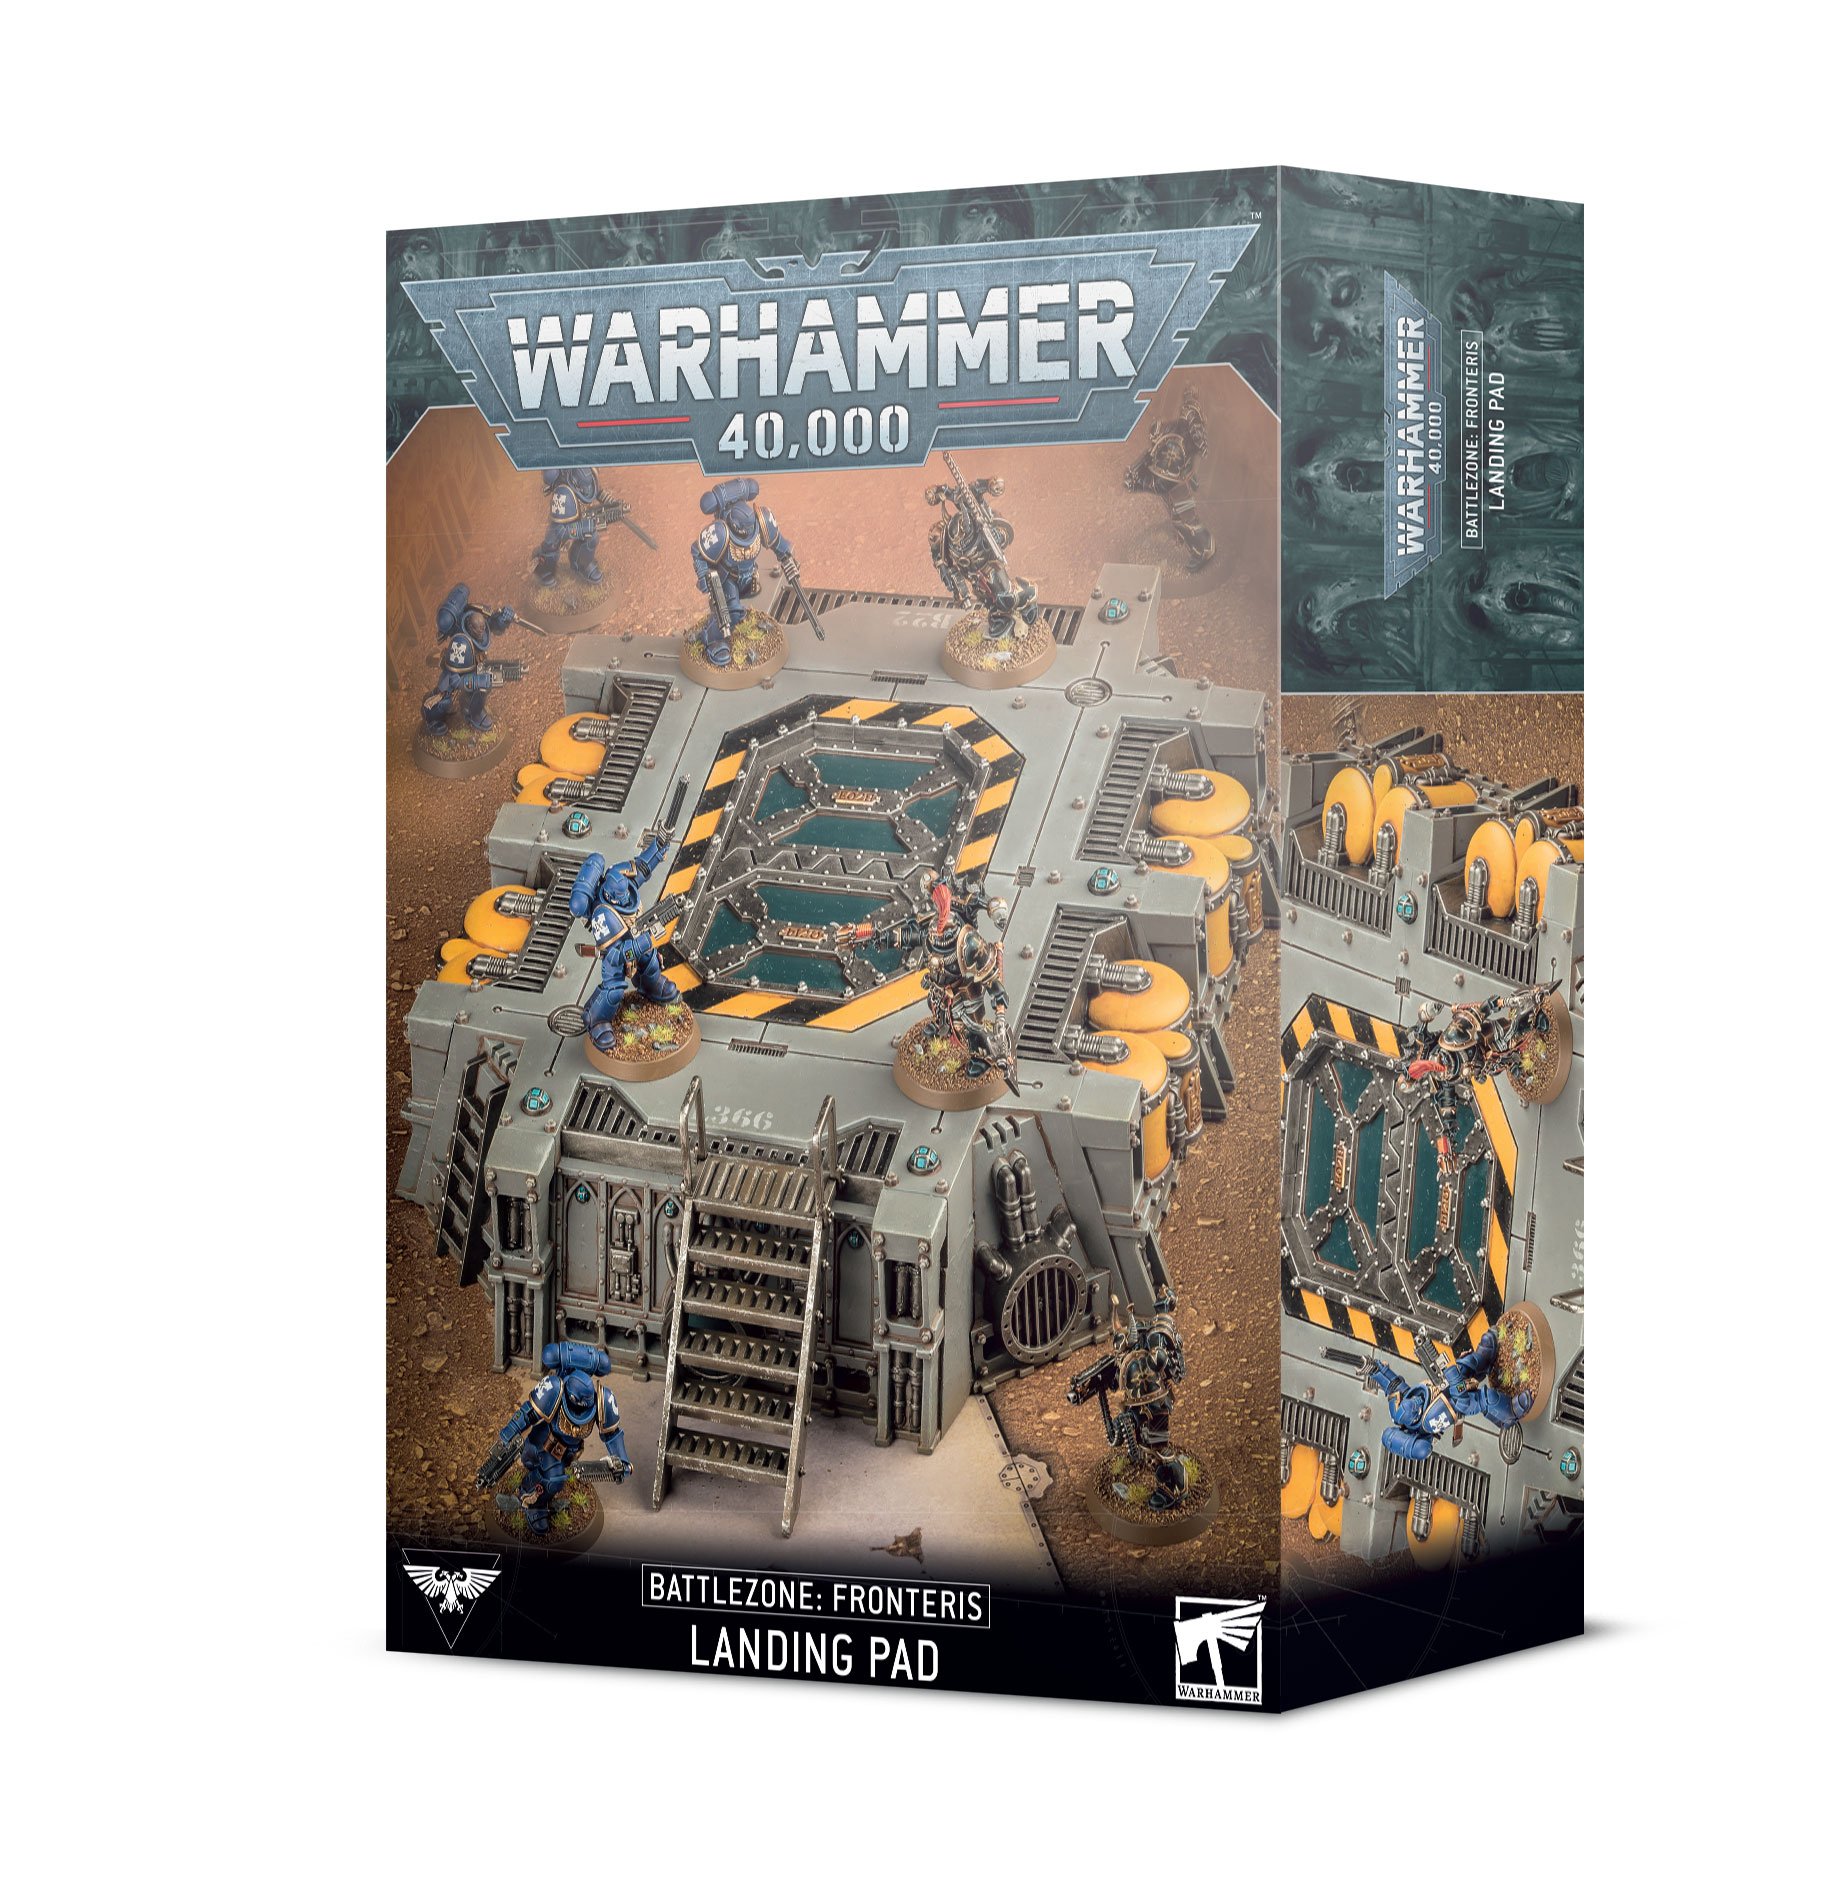 Warhammer 40,000: Battlezone Fronteris: Landing Pad  